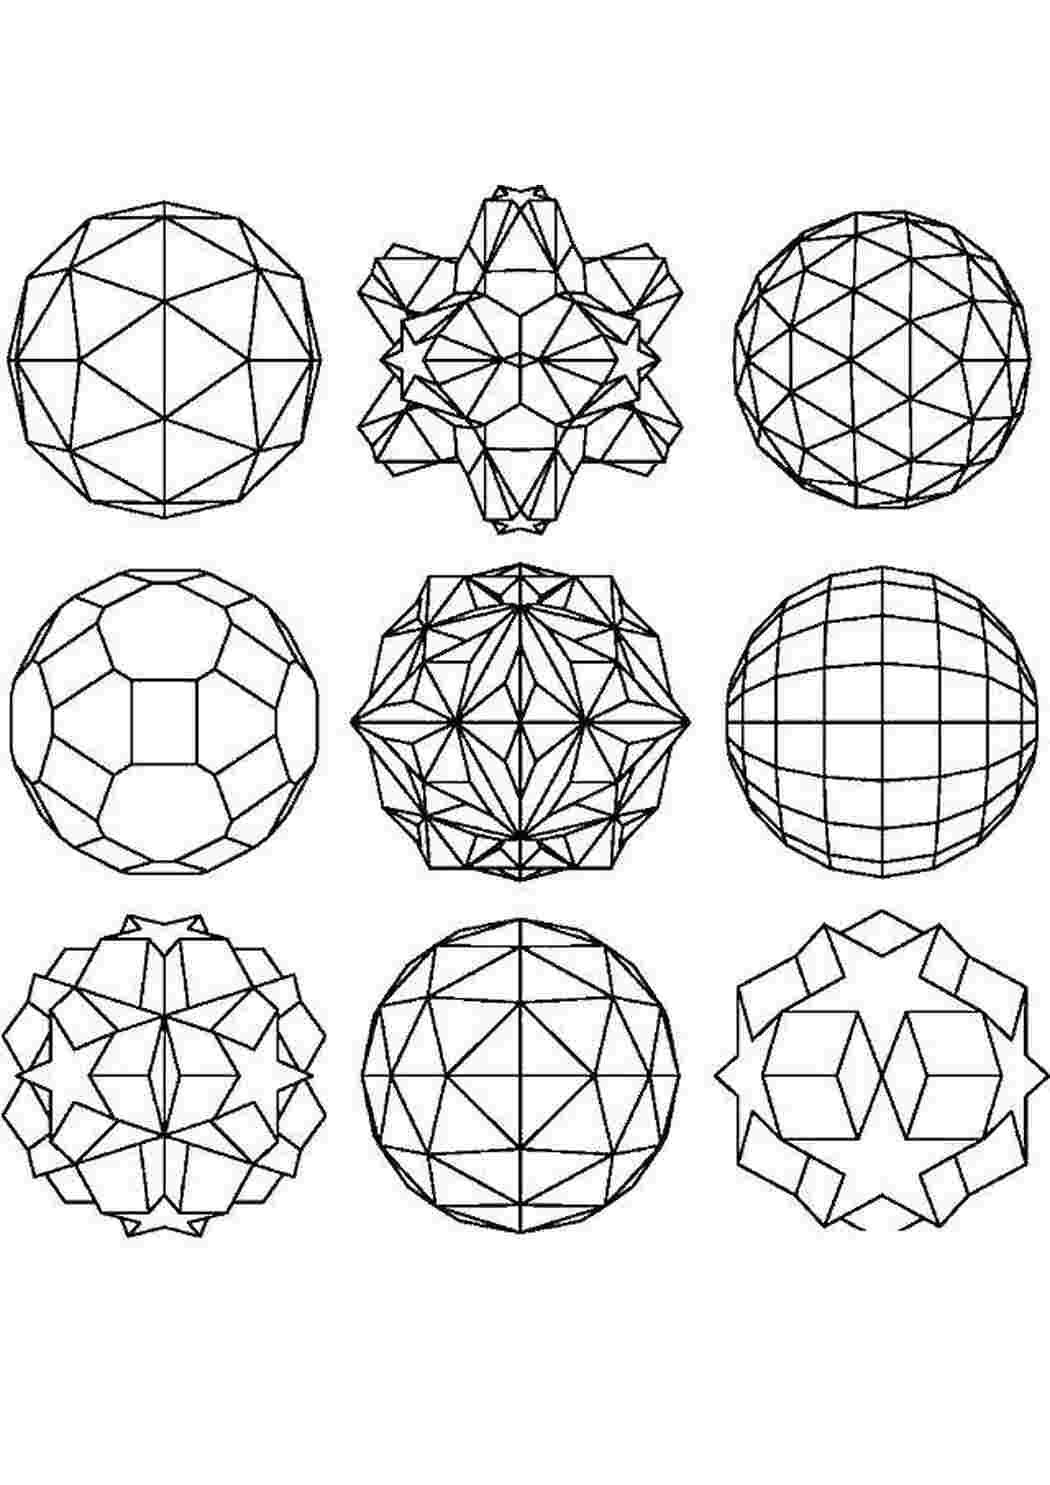 Раскраска - Математические фигуры - Пятиугольники на плоскости Лобачевского | MirChild